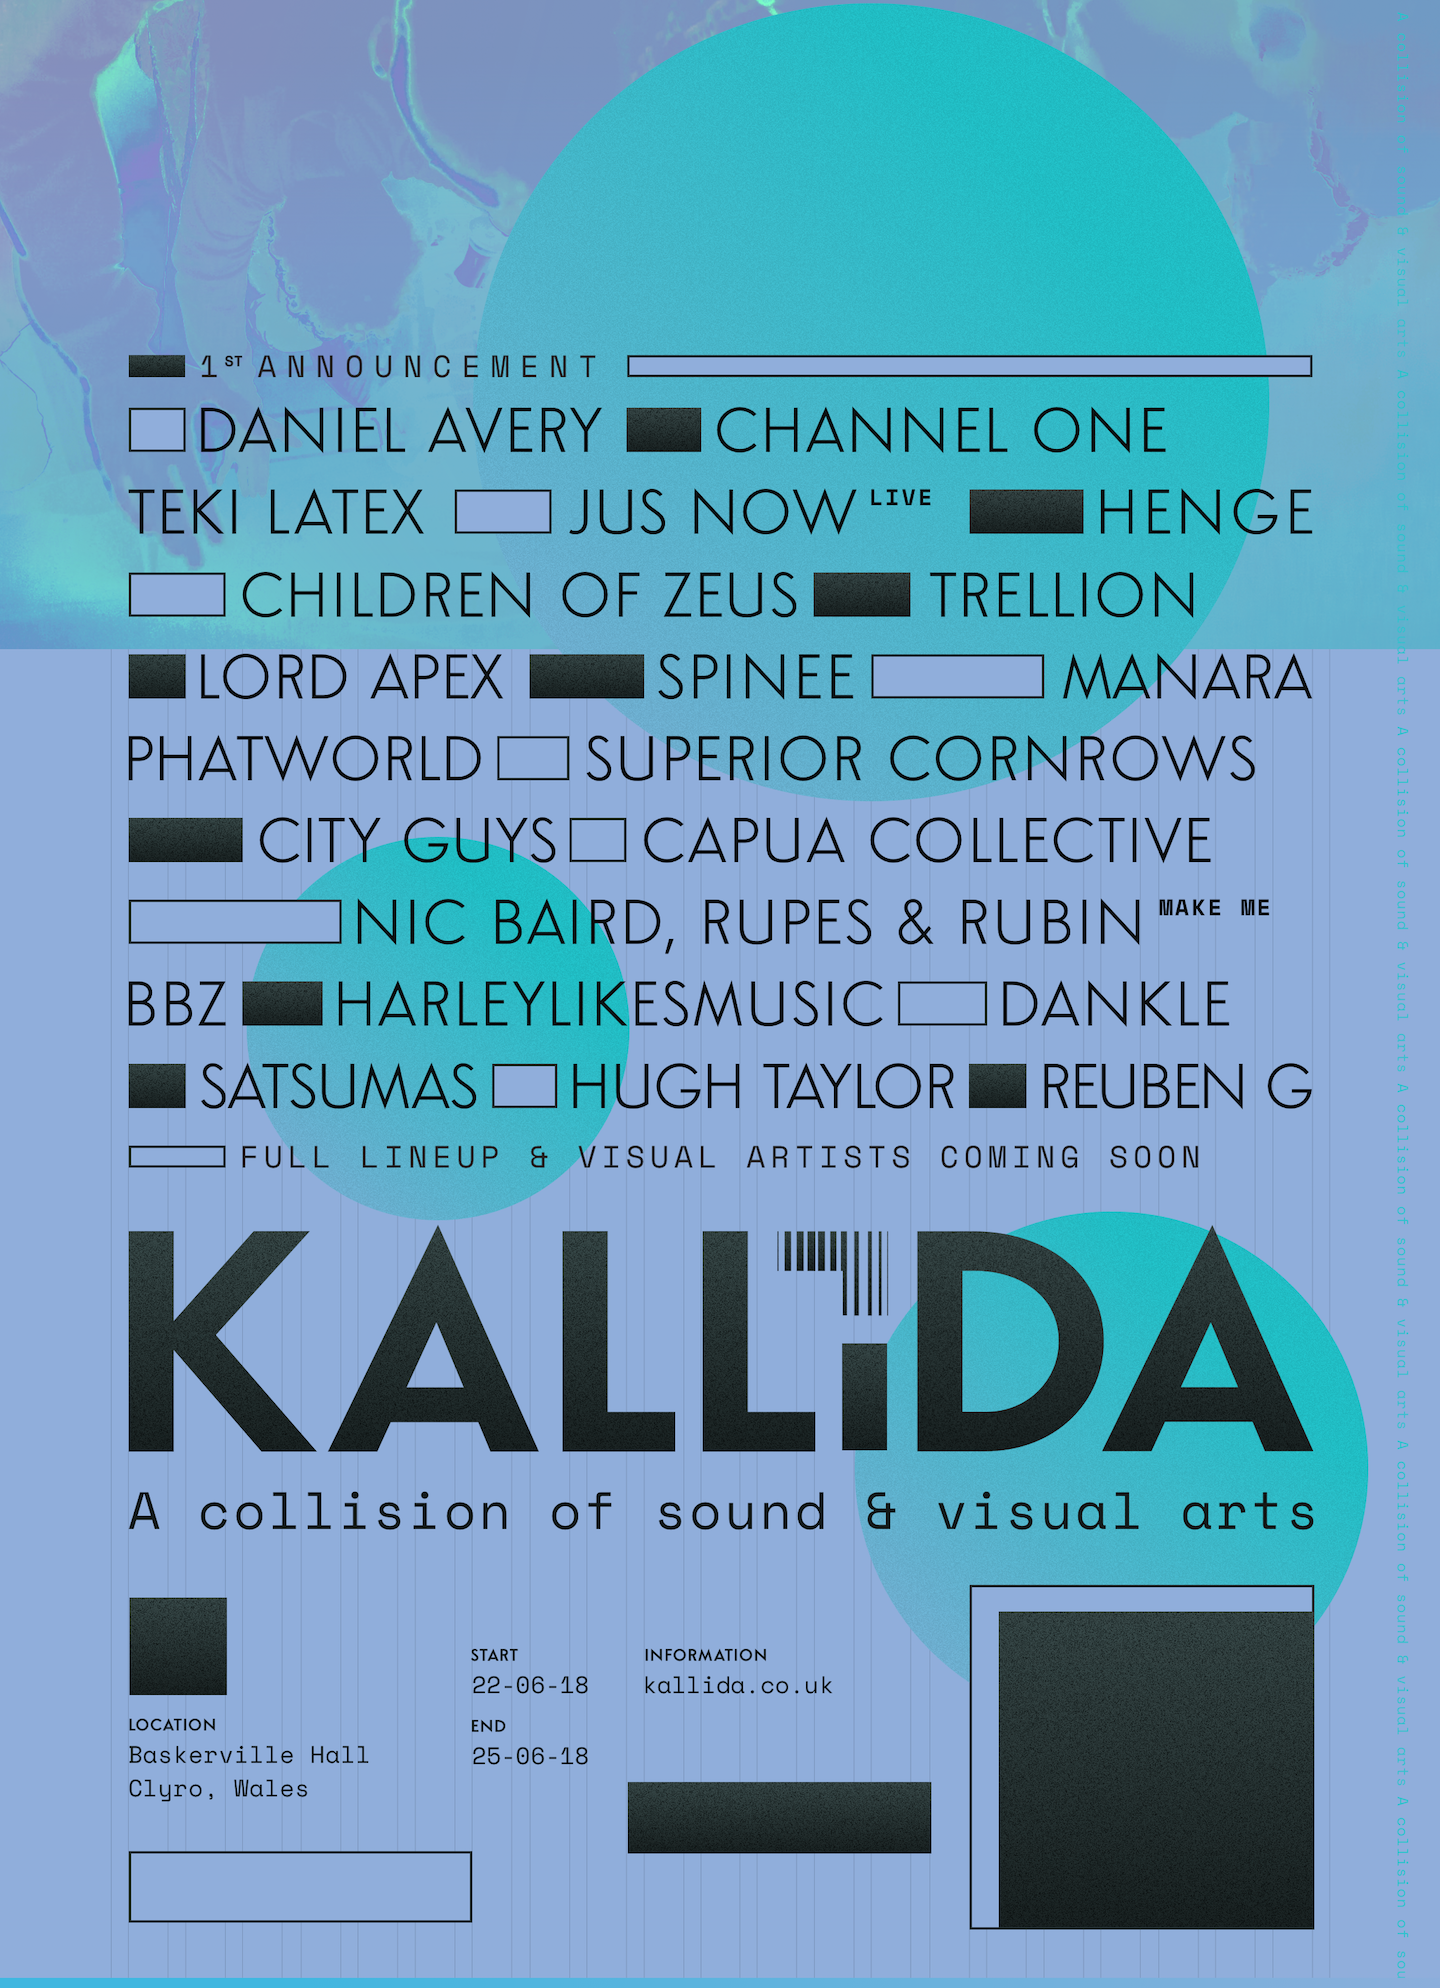 KALLIDA Festival returns for 2018 with Daniel Avery image